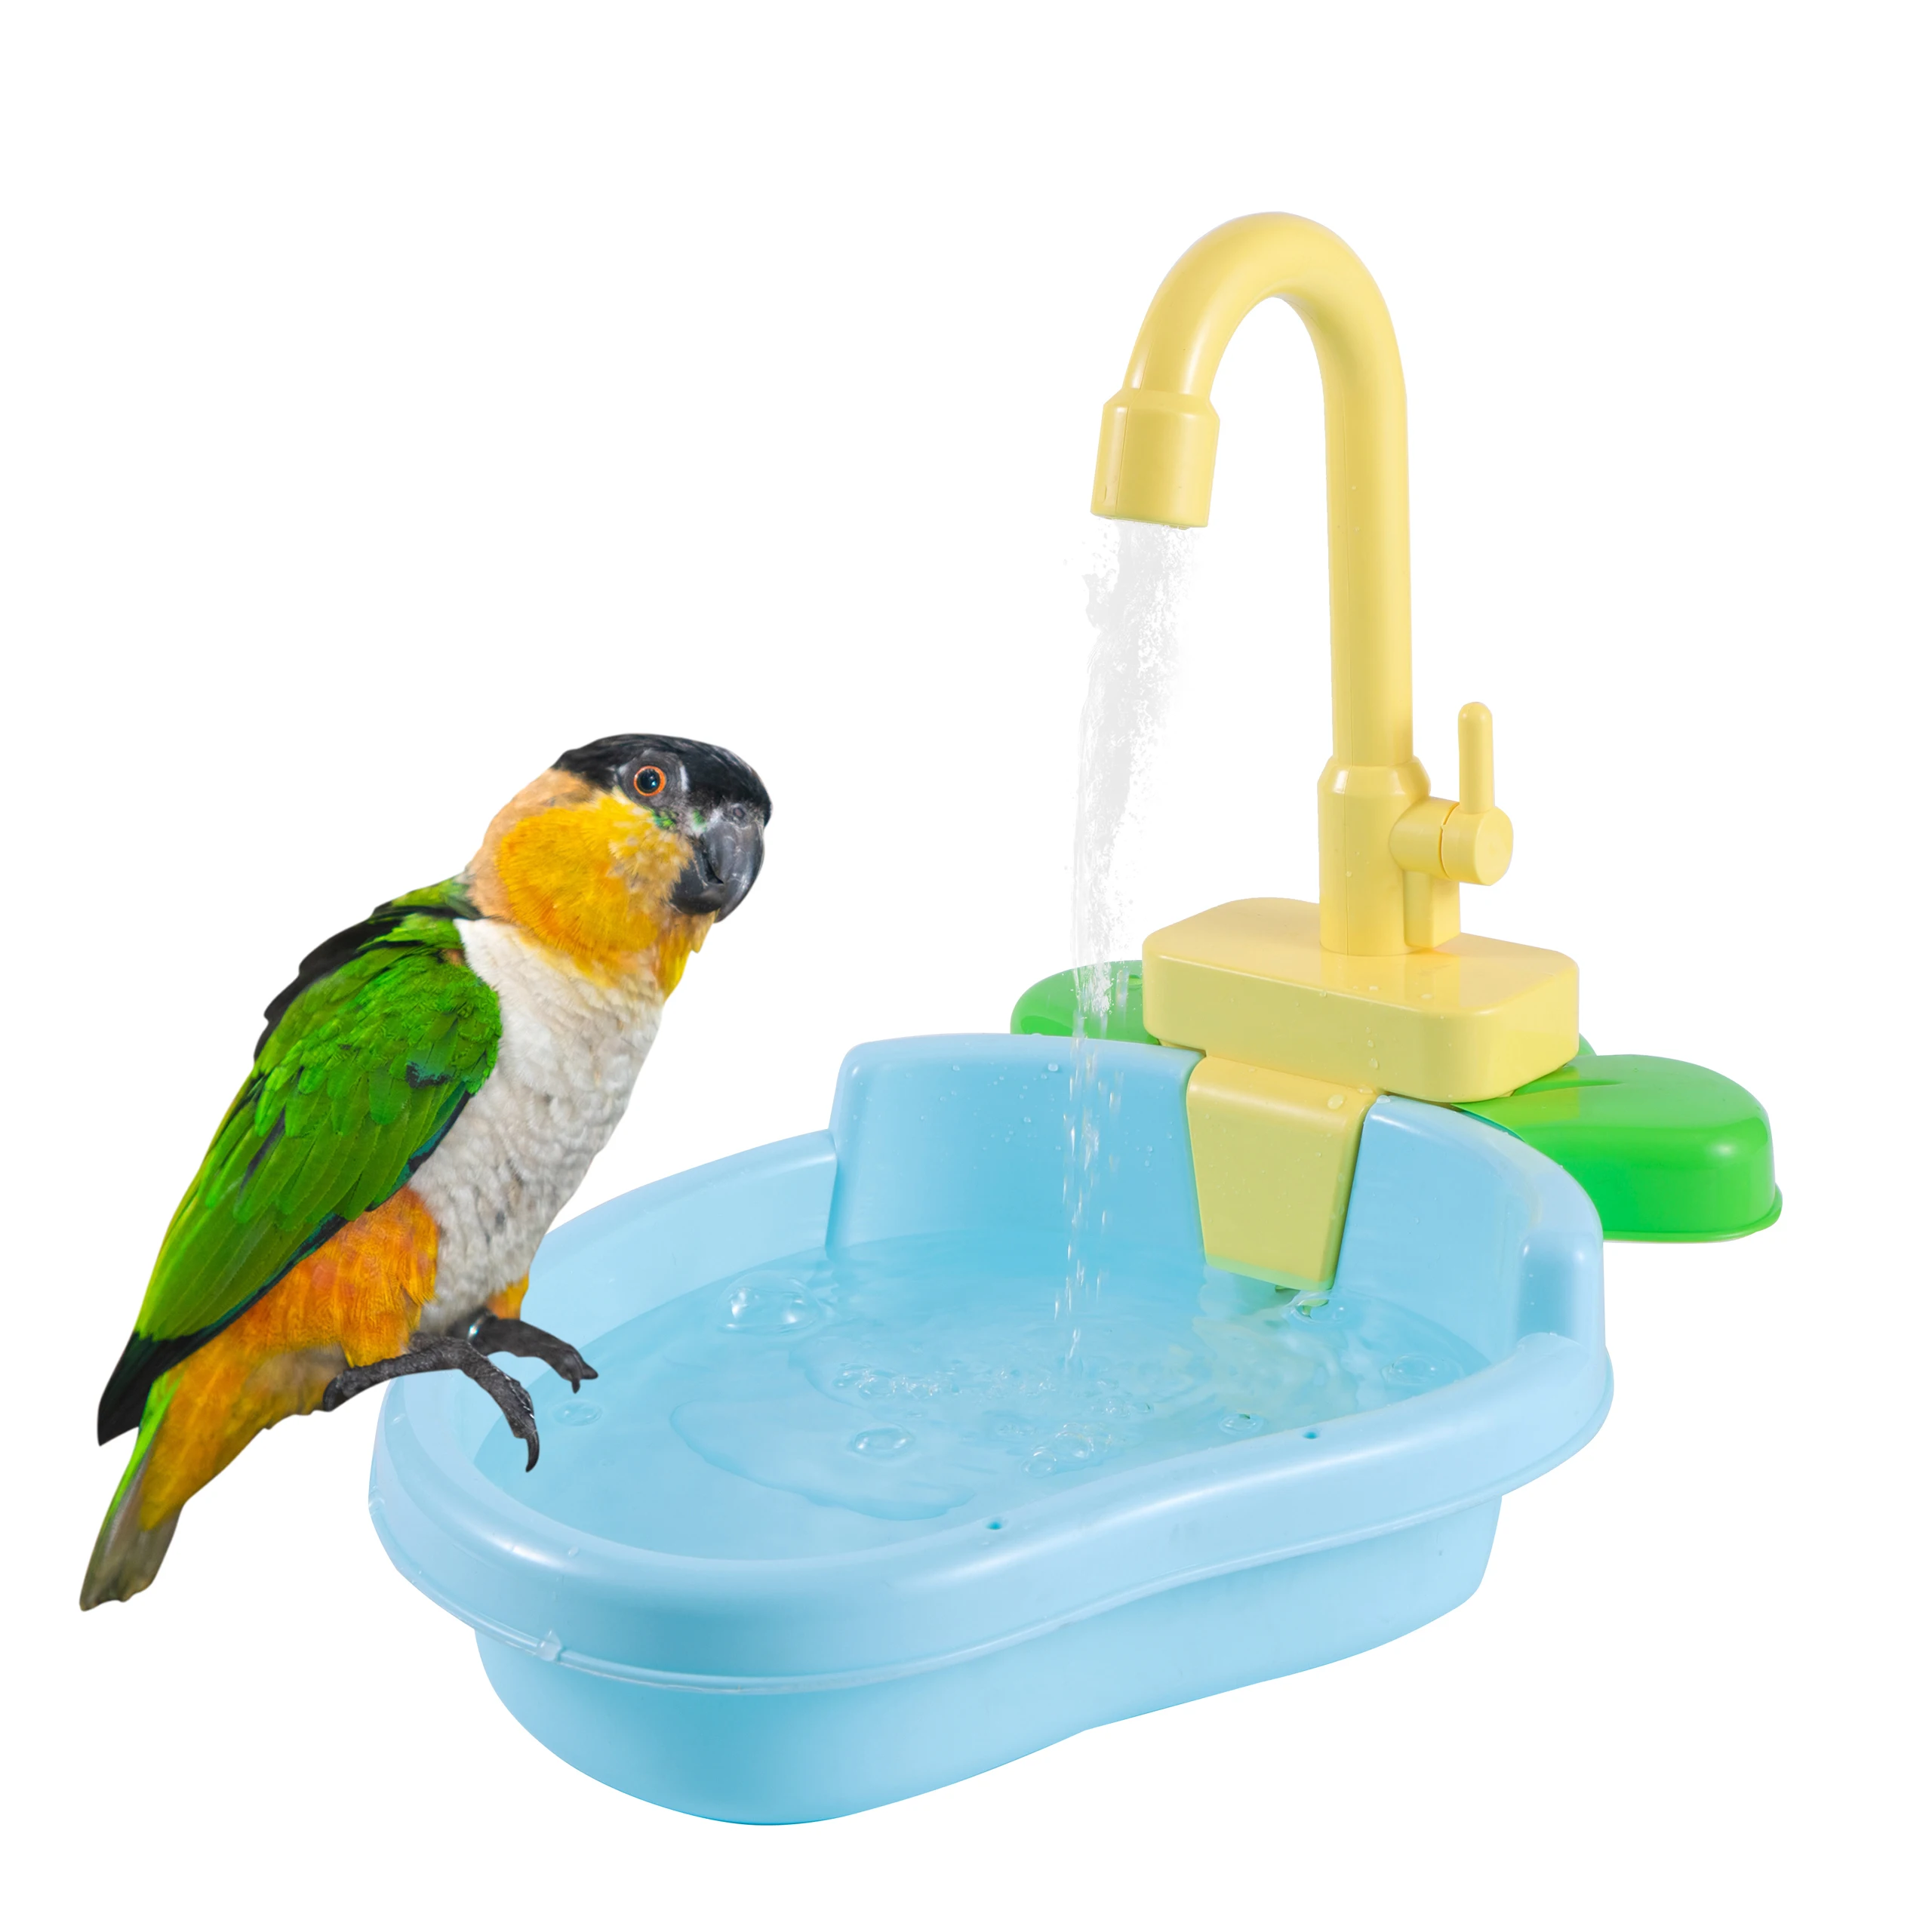 Душ для попугаев, Клетка для ванны для домашних птиц, Раковина для ванны для попугаев, Чаша для душа, Аксессуары для птиц, Игрушка для попугаев, Ванна для птиц в подарок Изображение 0